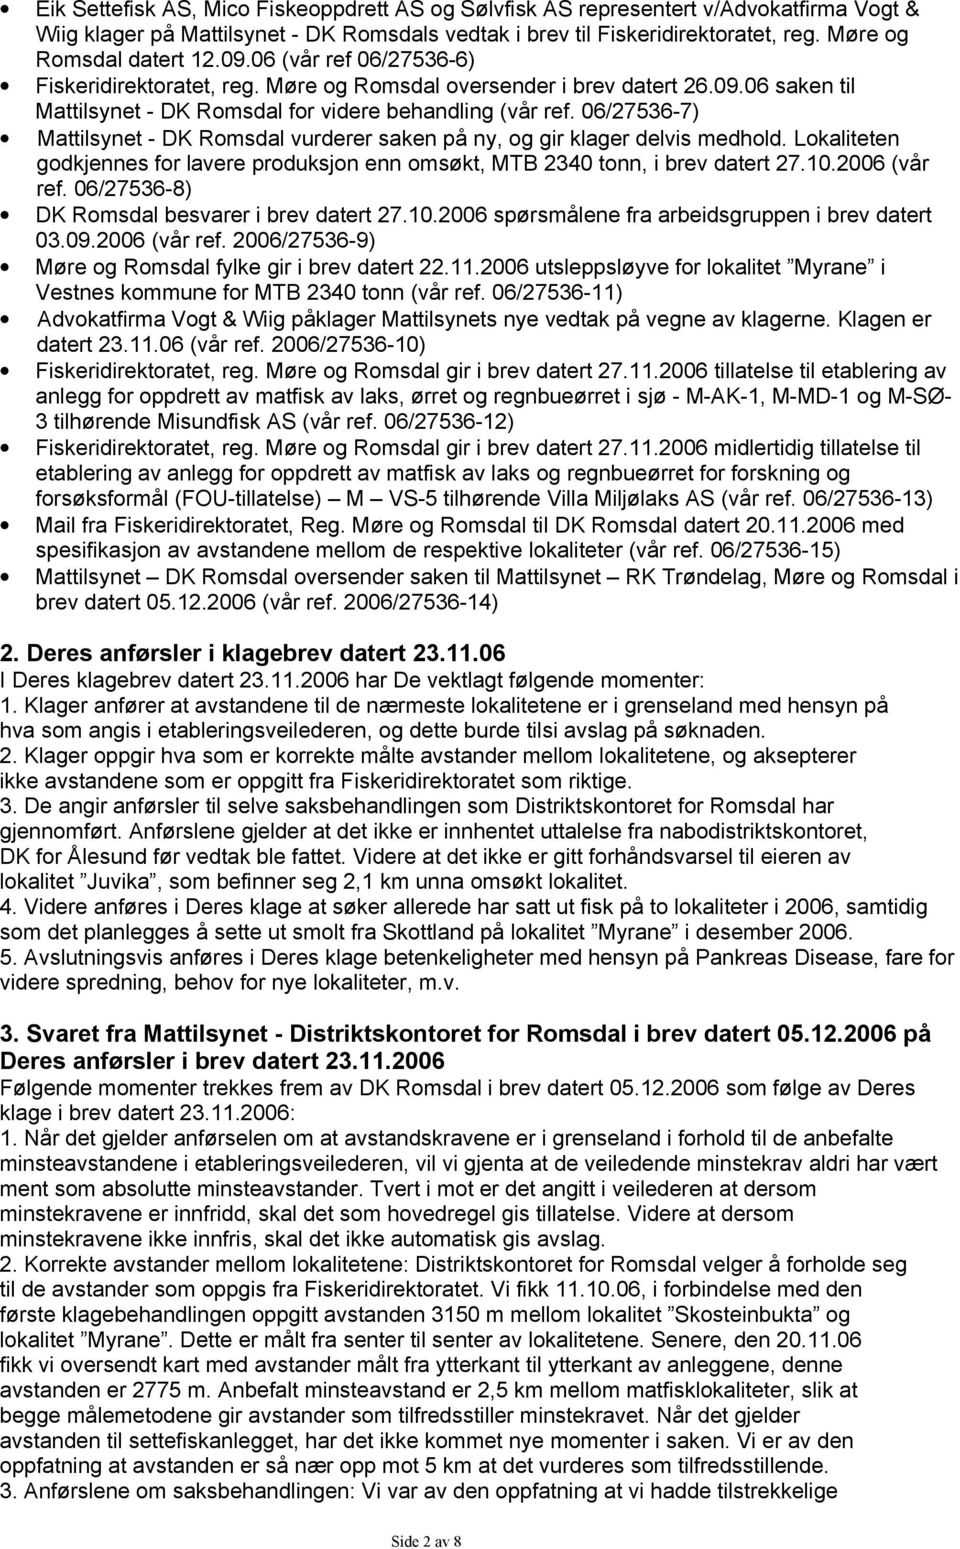 06/27536-7) Mattilsynet - DK Romsdal vurderer saken på ny, og gir klager delvis medhold. Lokaliteten godkjennes for lavere produksjon enn omsøkt, MTB 2340 tonn, i brev datert 27.10.2006 (vår ref.